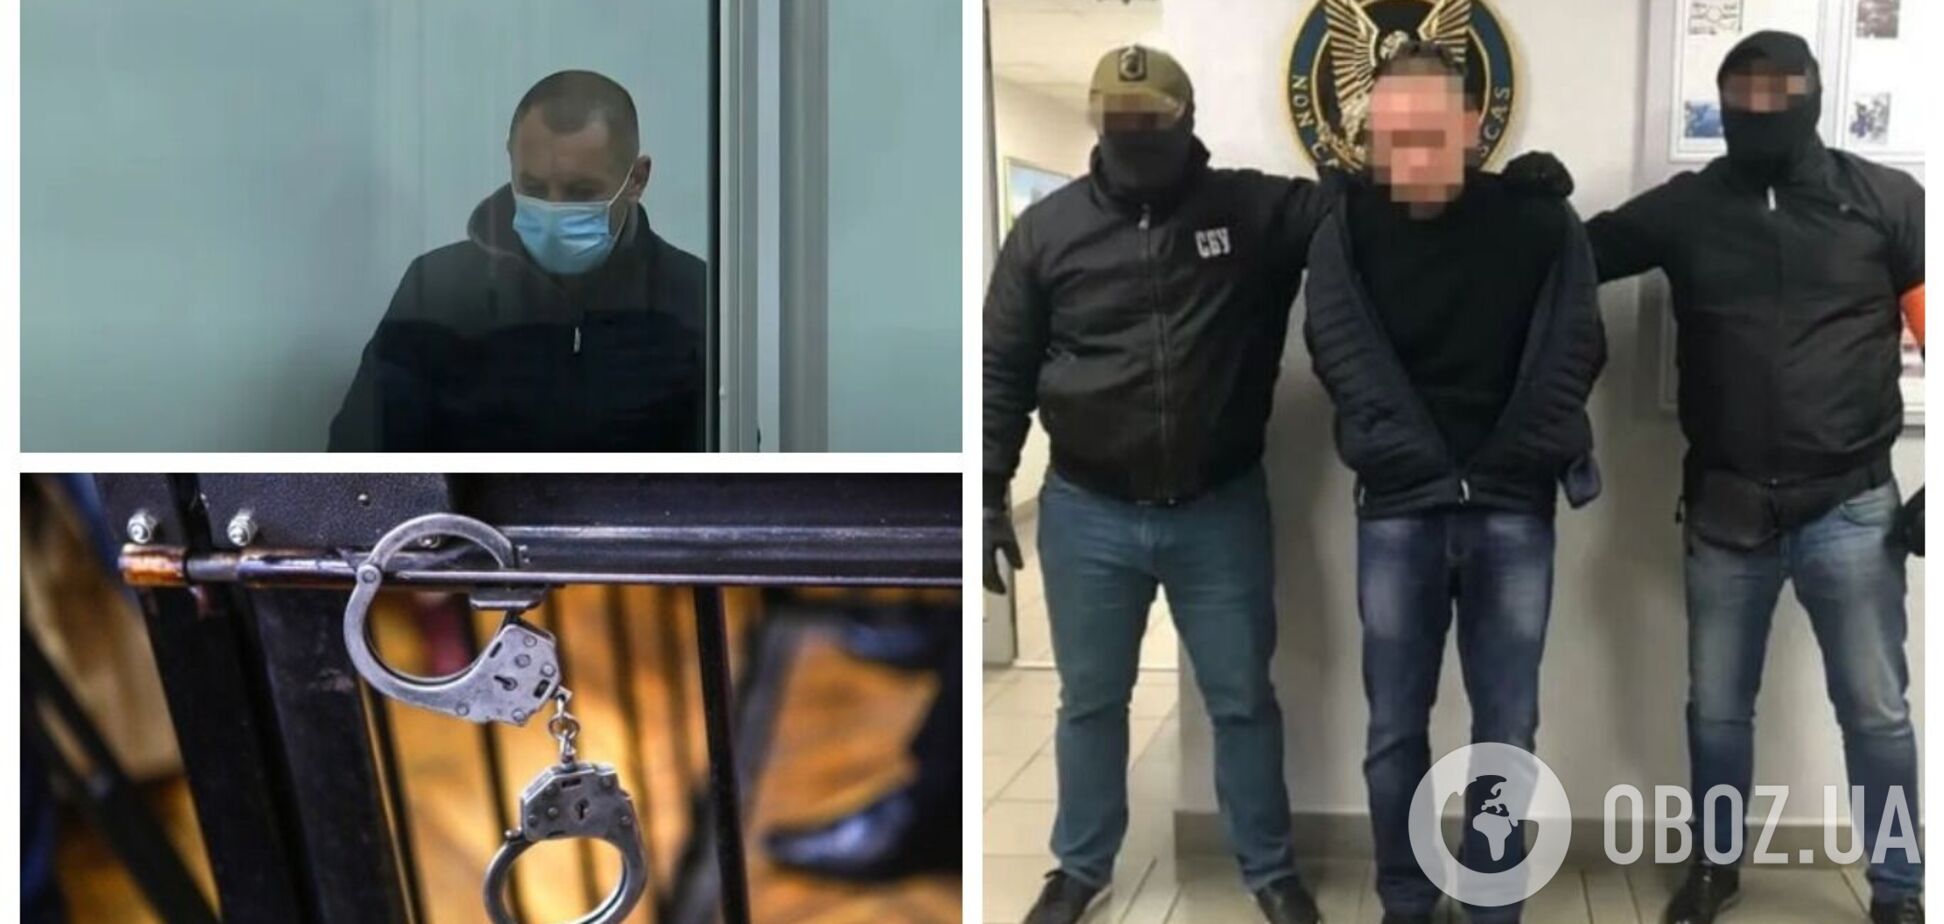 Комендант тюрьмы боевиков 'ДНР' рассказал о пытках над пленными в 'Изоляции': пускали ток и оставляли без воды. Видео